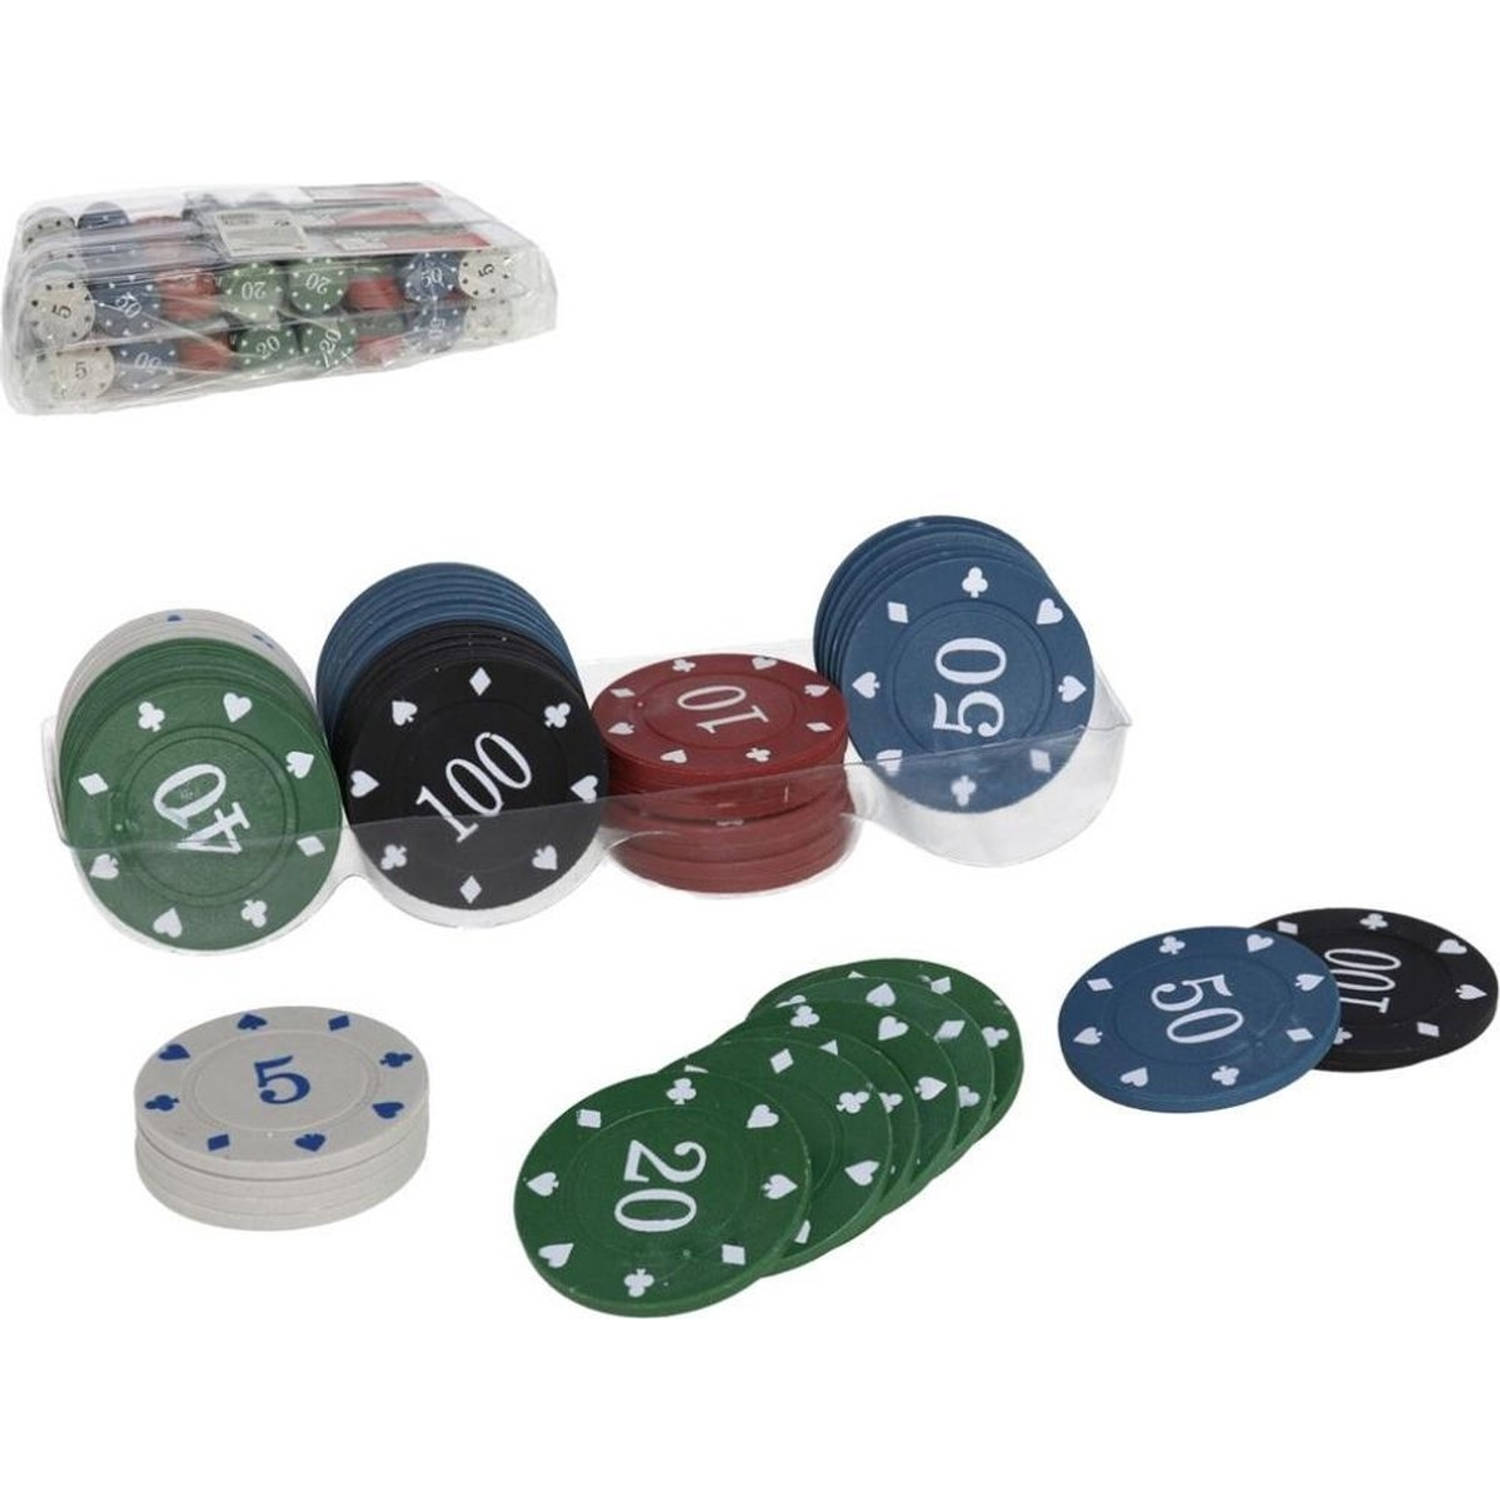 Poker chips - Pokerset - 96 pc Poker chips - Poker set / Poker / kaartspel / pokerspel / pokeren / casino / Pokerchips